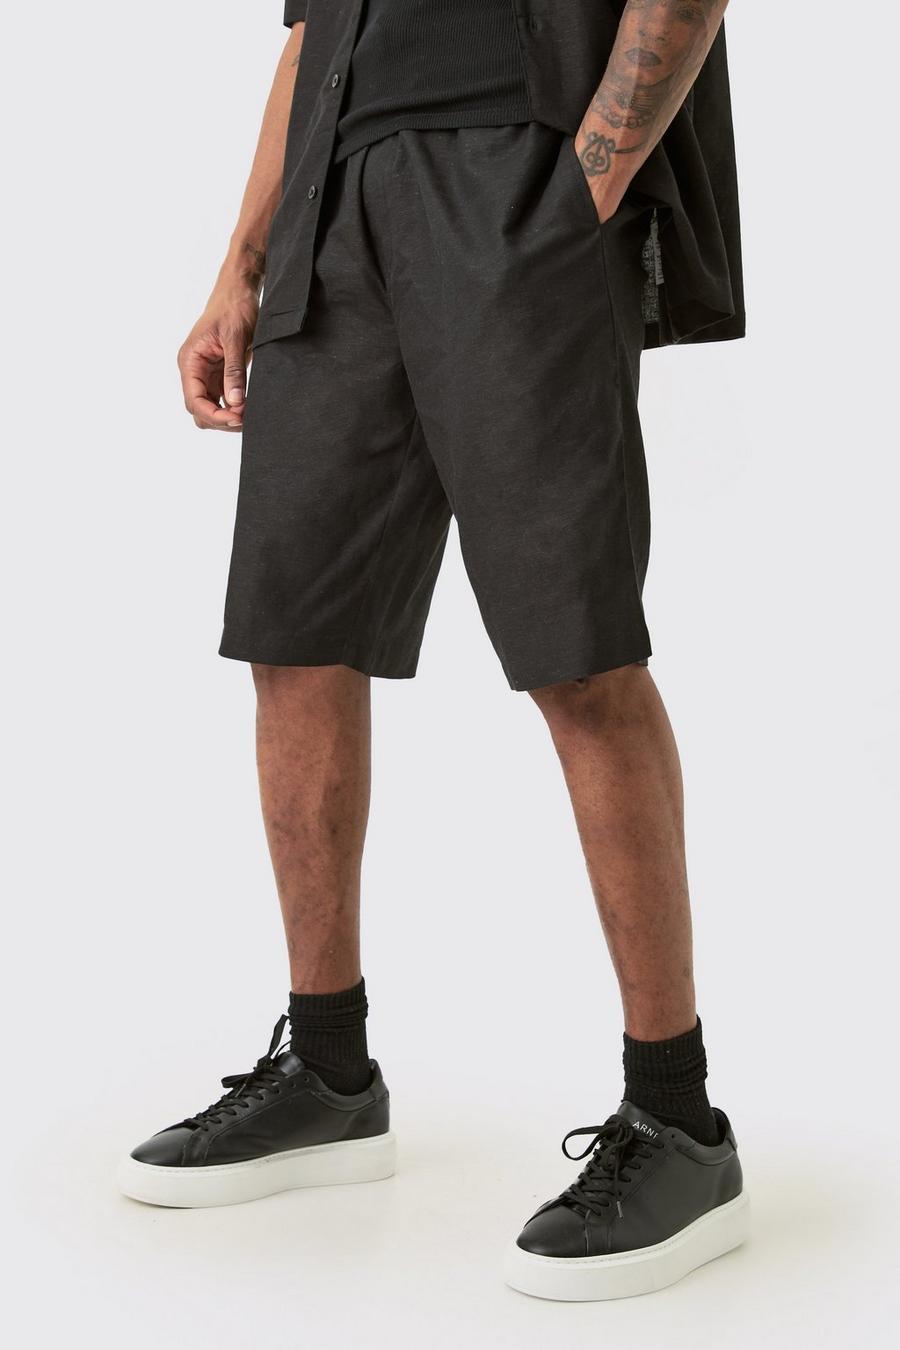 Tall schwarze Leinen-Shorts mit elastischem Bund, Black